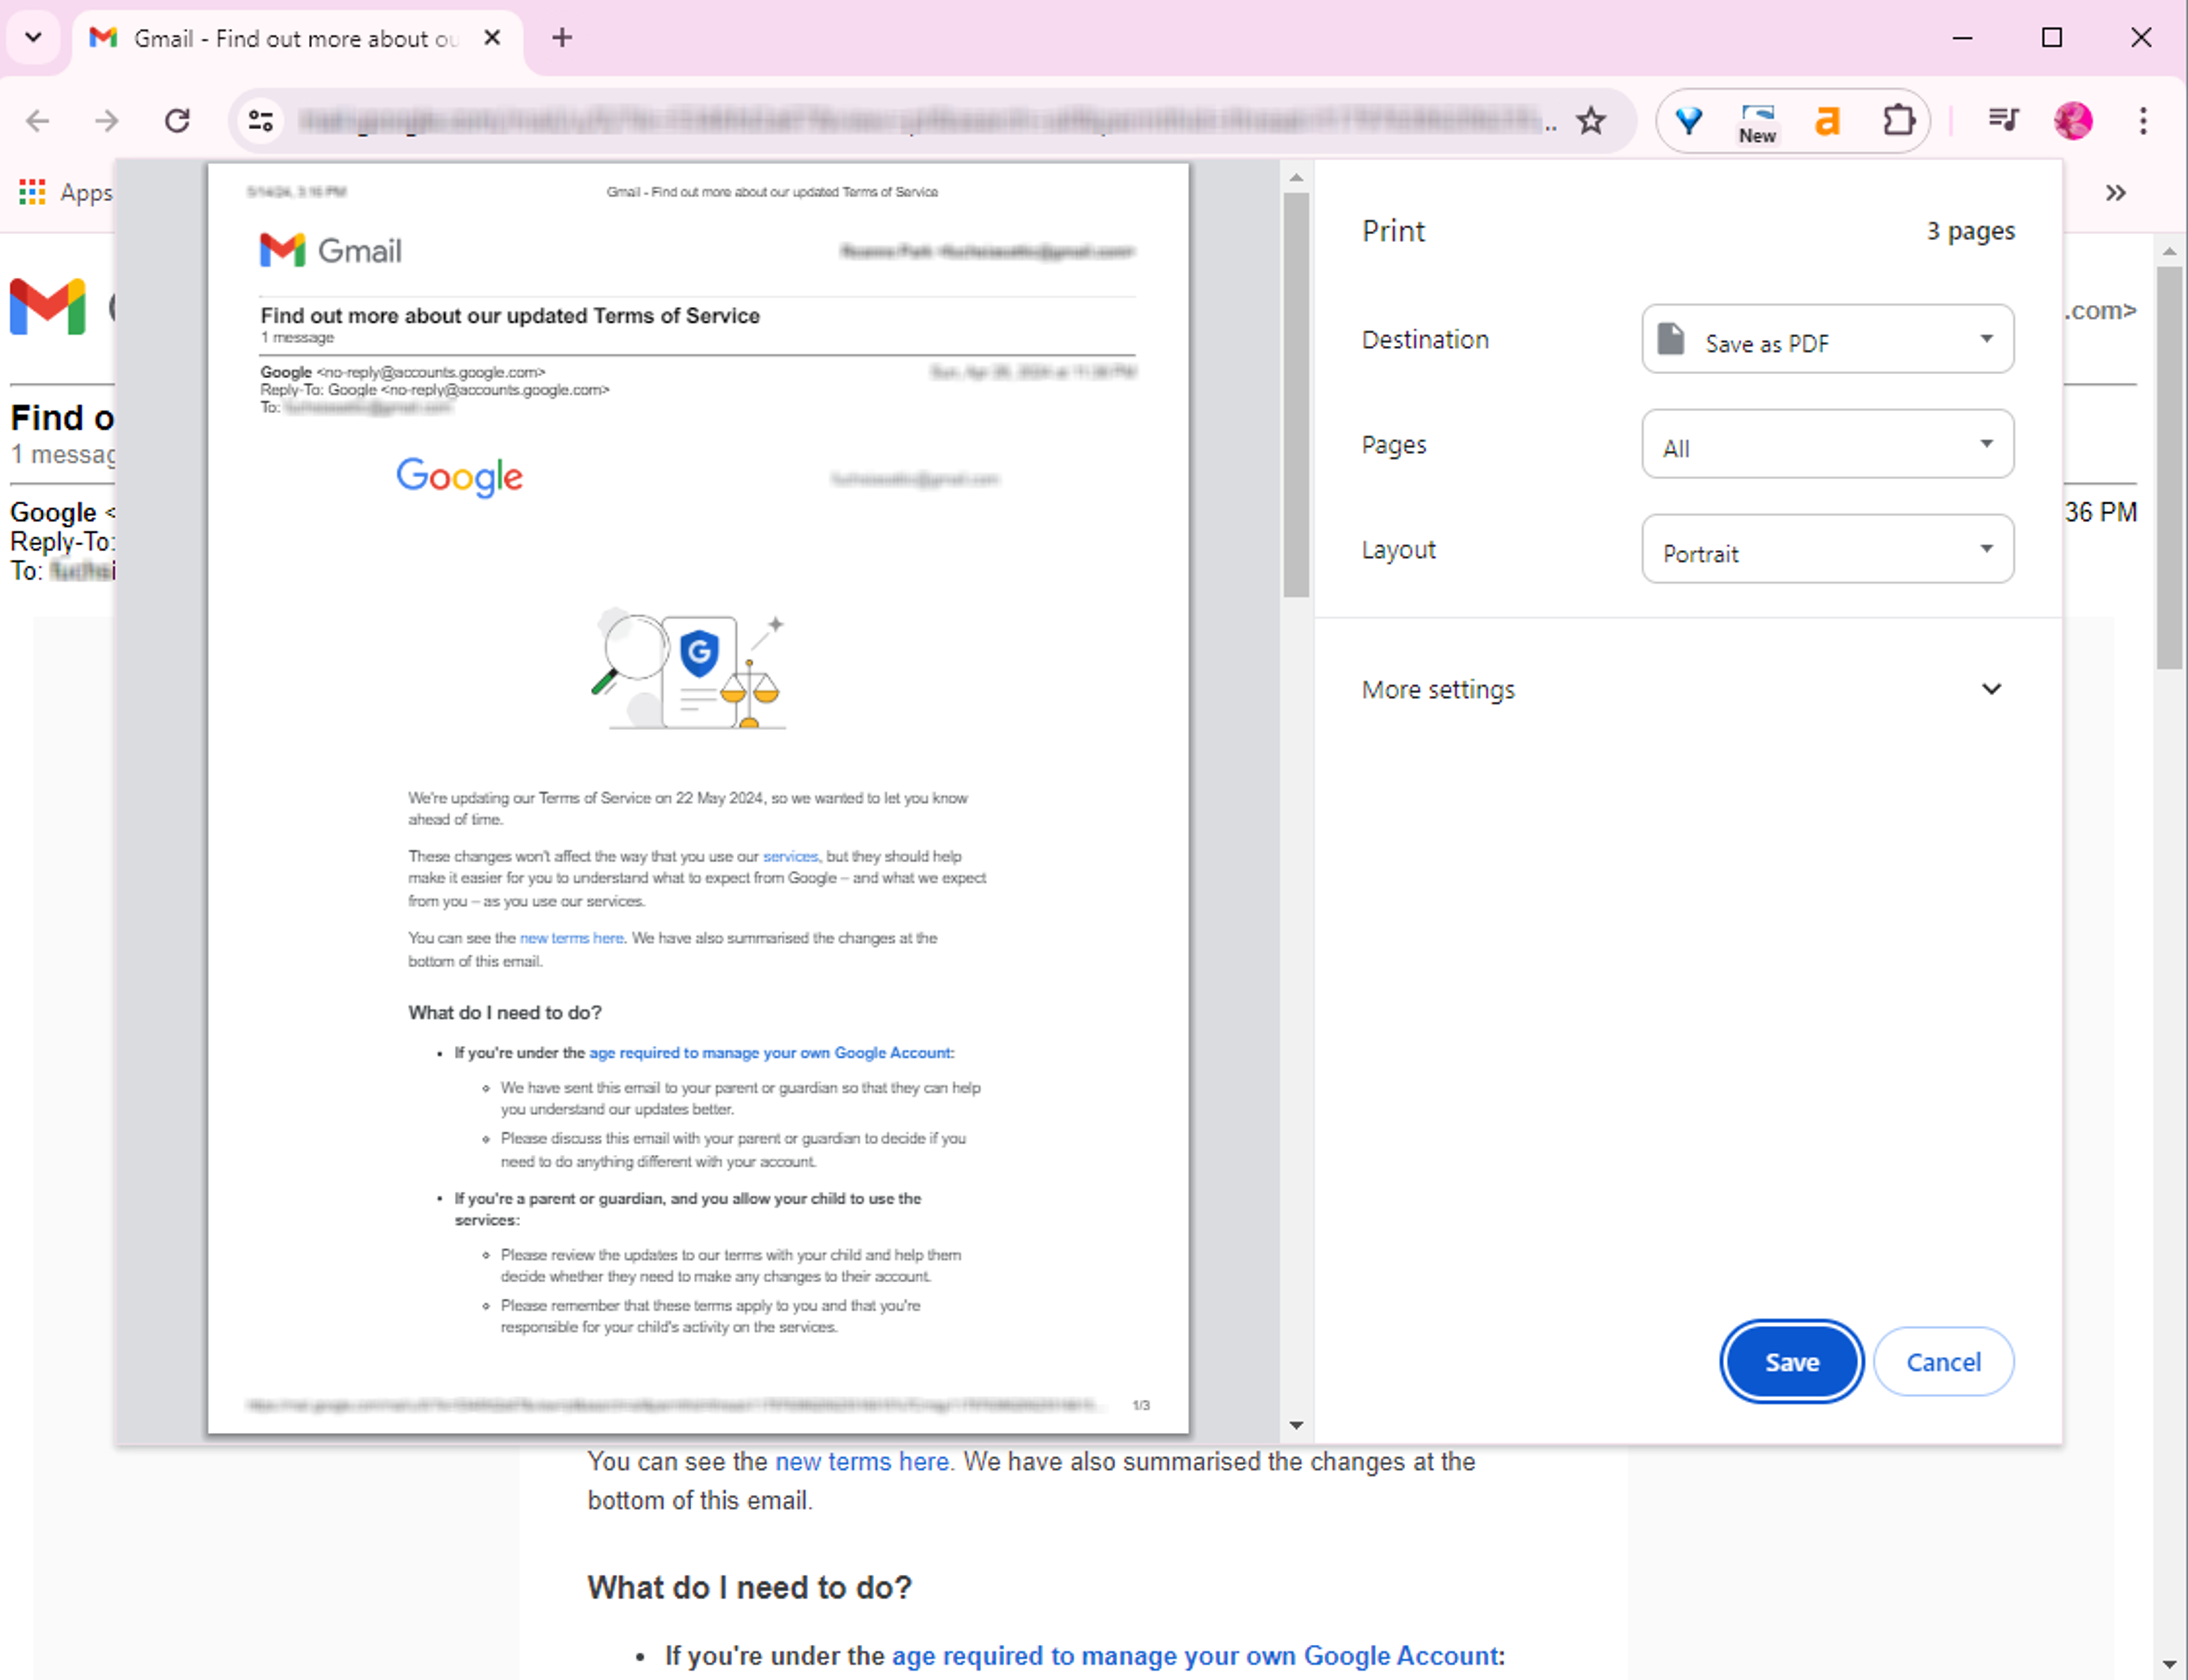 Saving Gmail as PDF